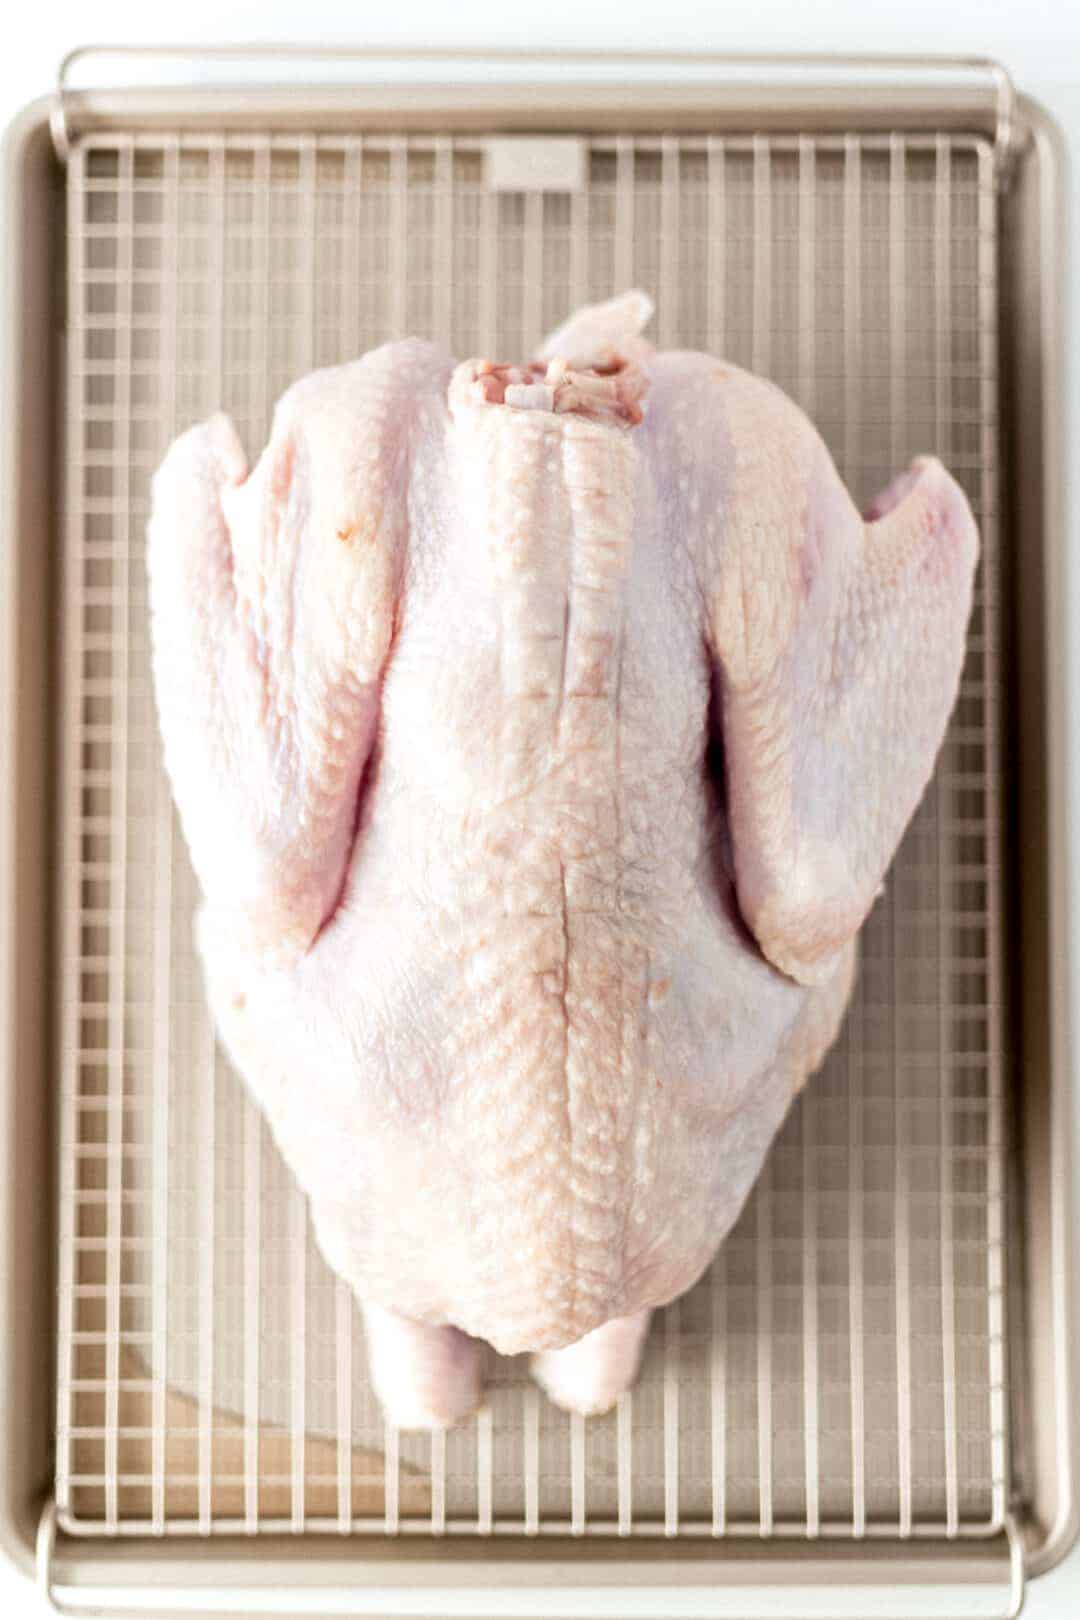 raw turkey on large baking sheet 